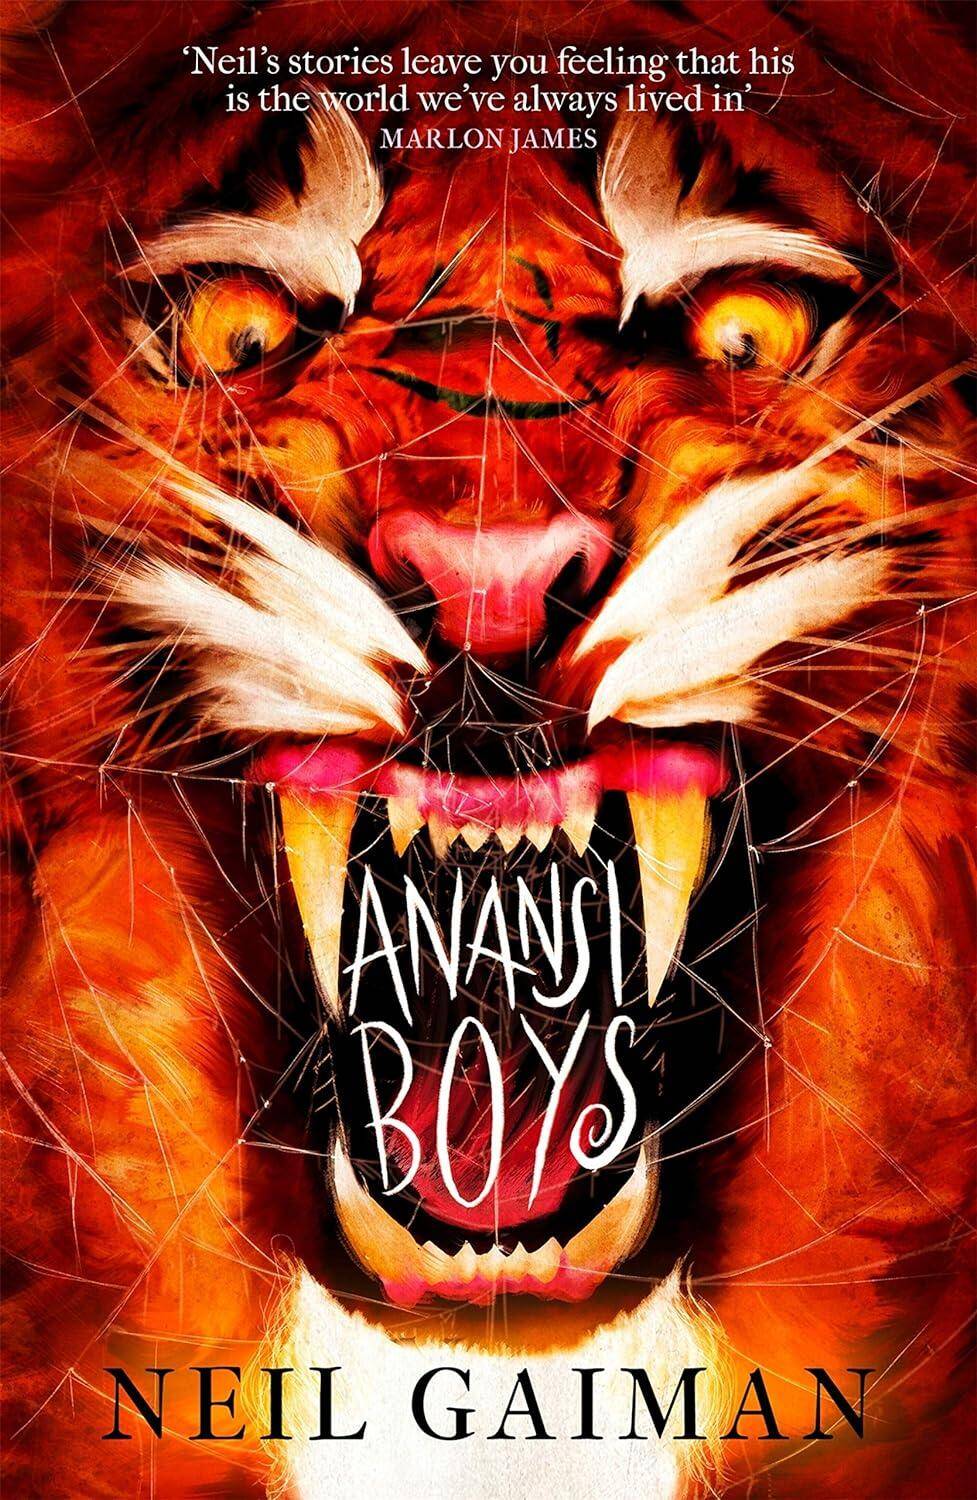 Anansi Boys/Neil Gaiman